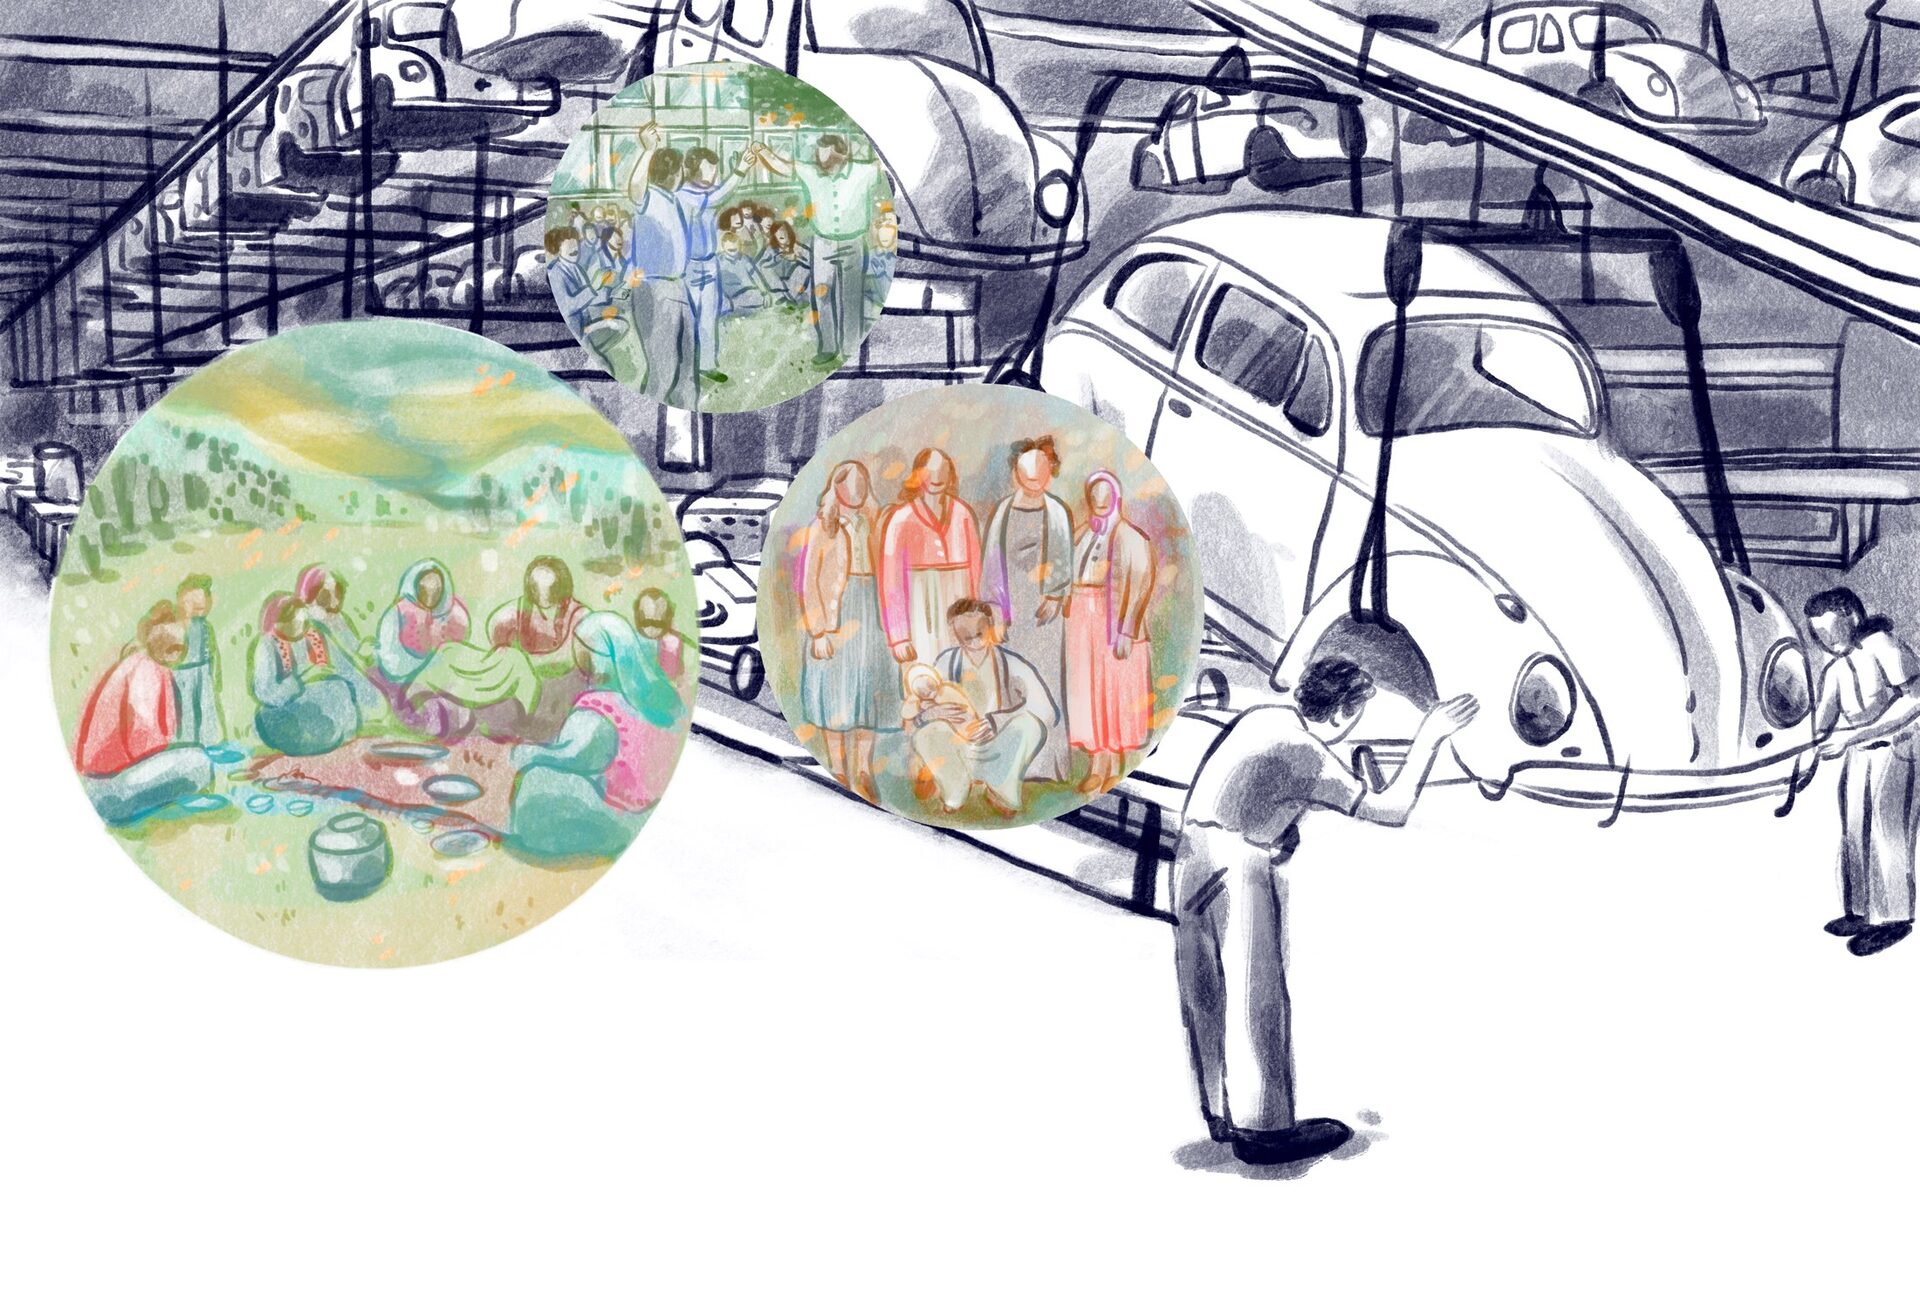 Zeichnung von einer Werkstatt mit Autos sowie Familie beim Picknick, beim Tanzen und stehend im Kreis.